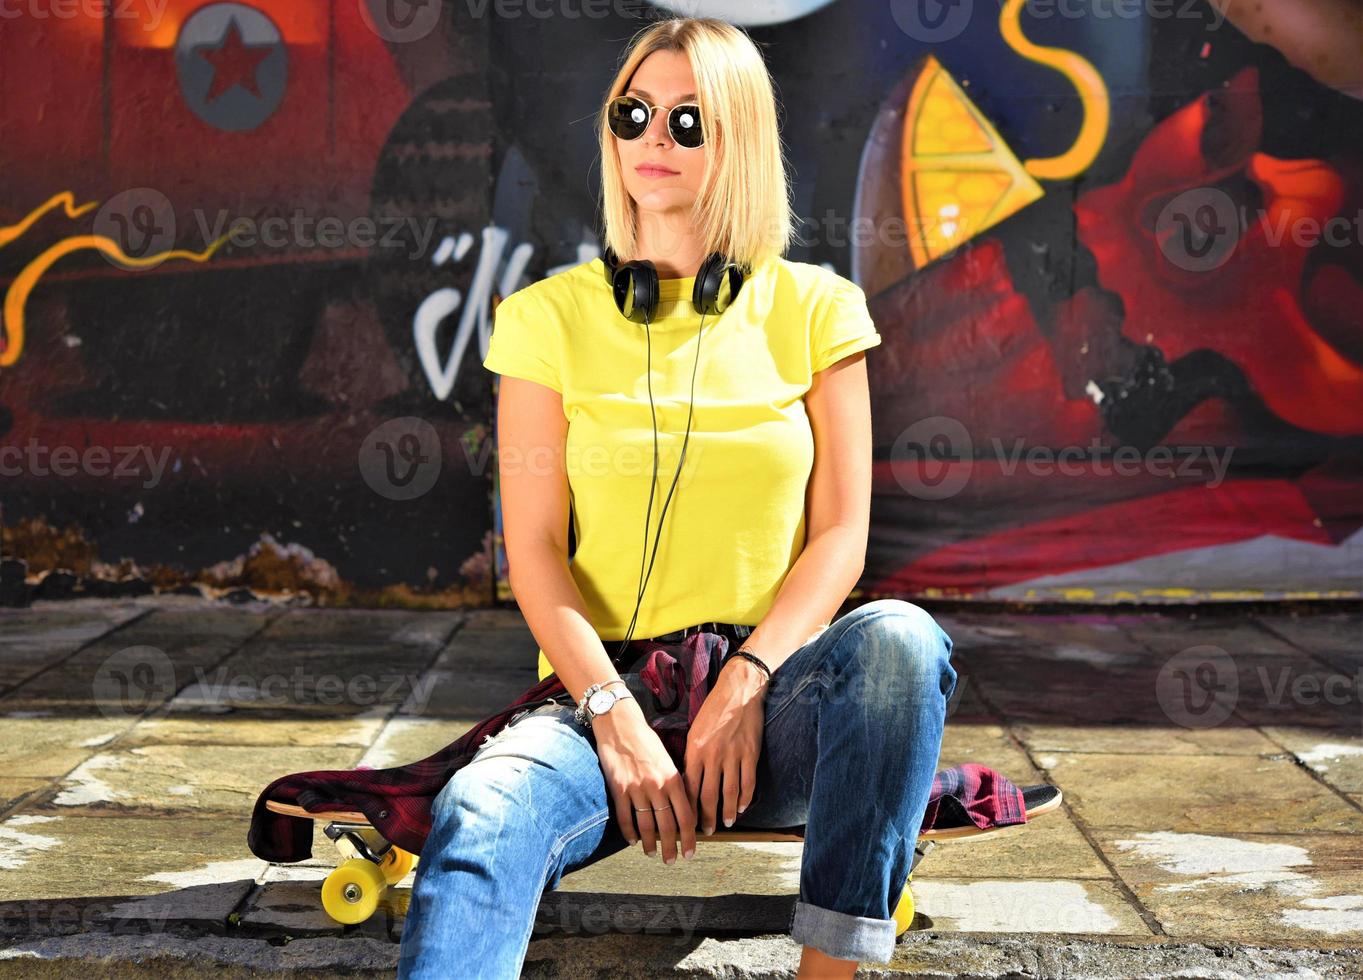 genial mujer de skate en un parque público de graffiti foto